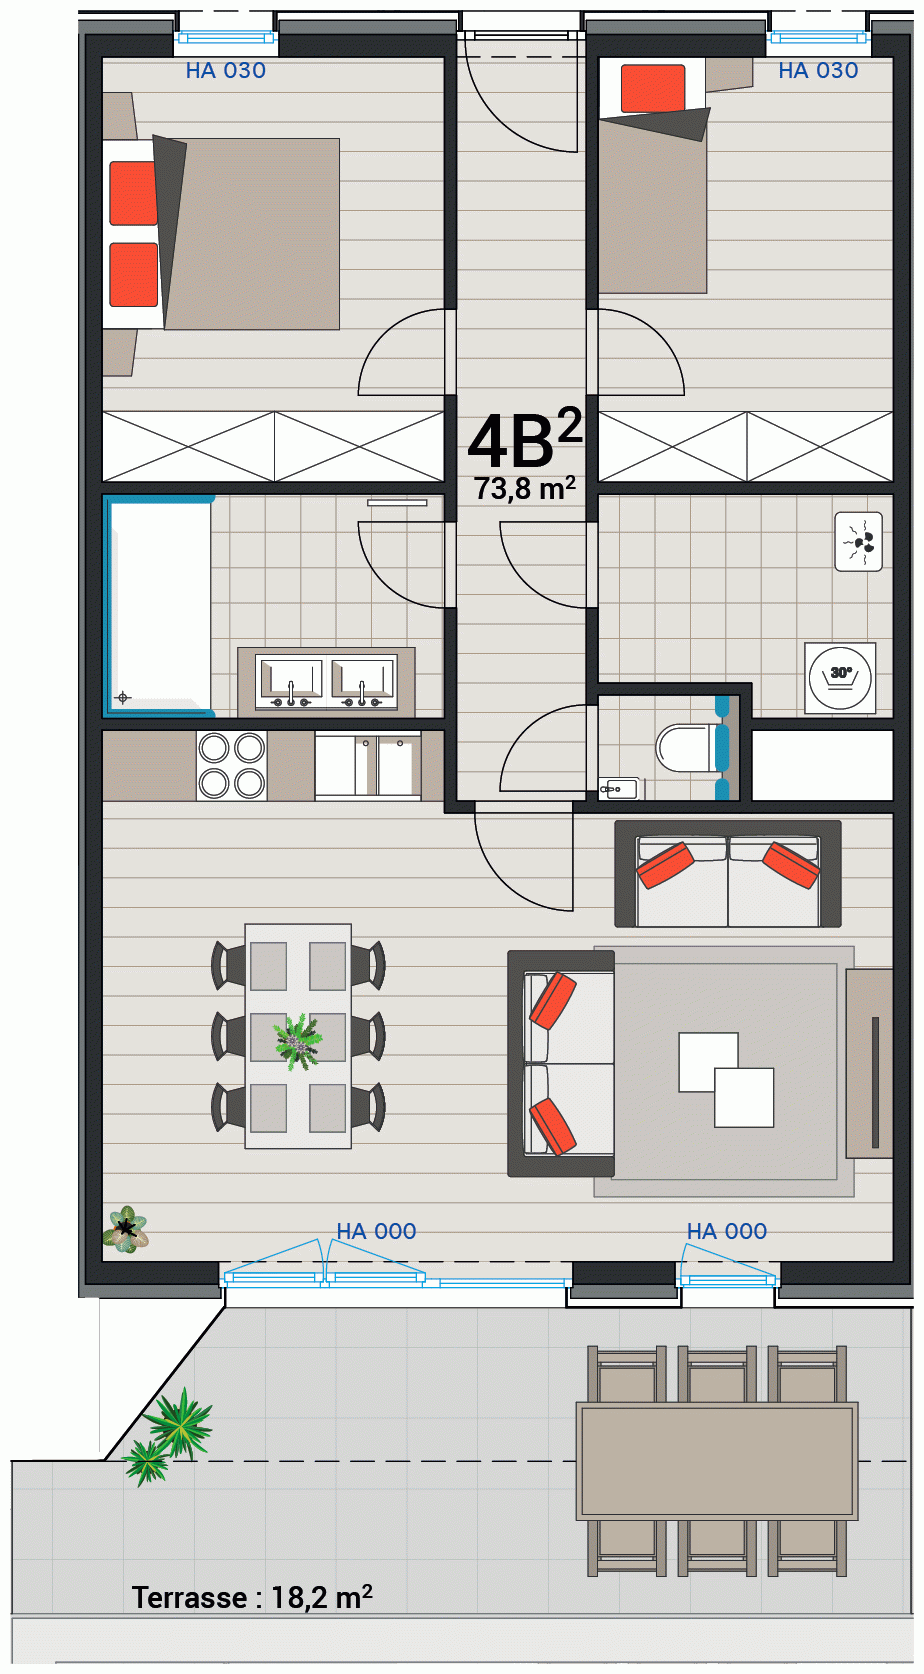 Appartement 4B